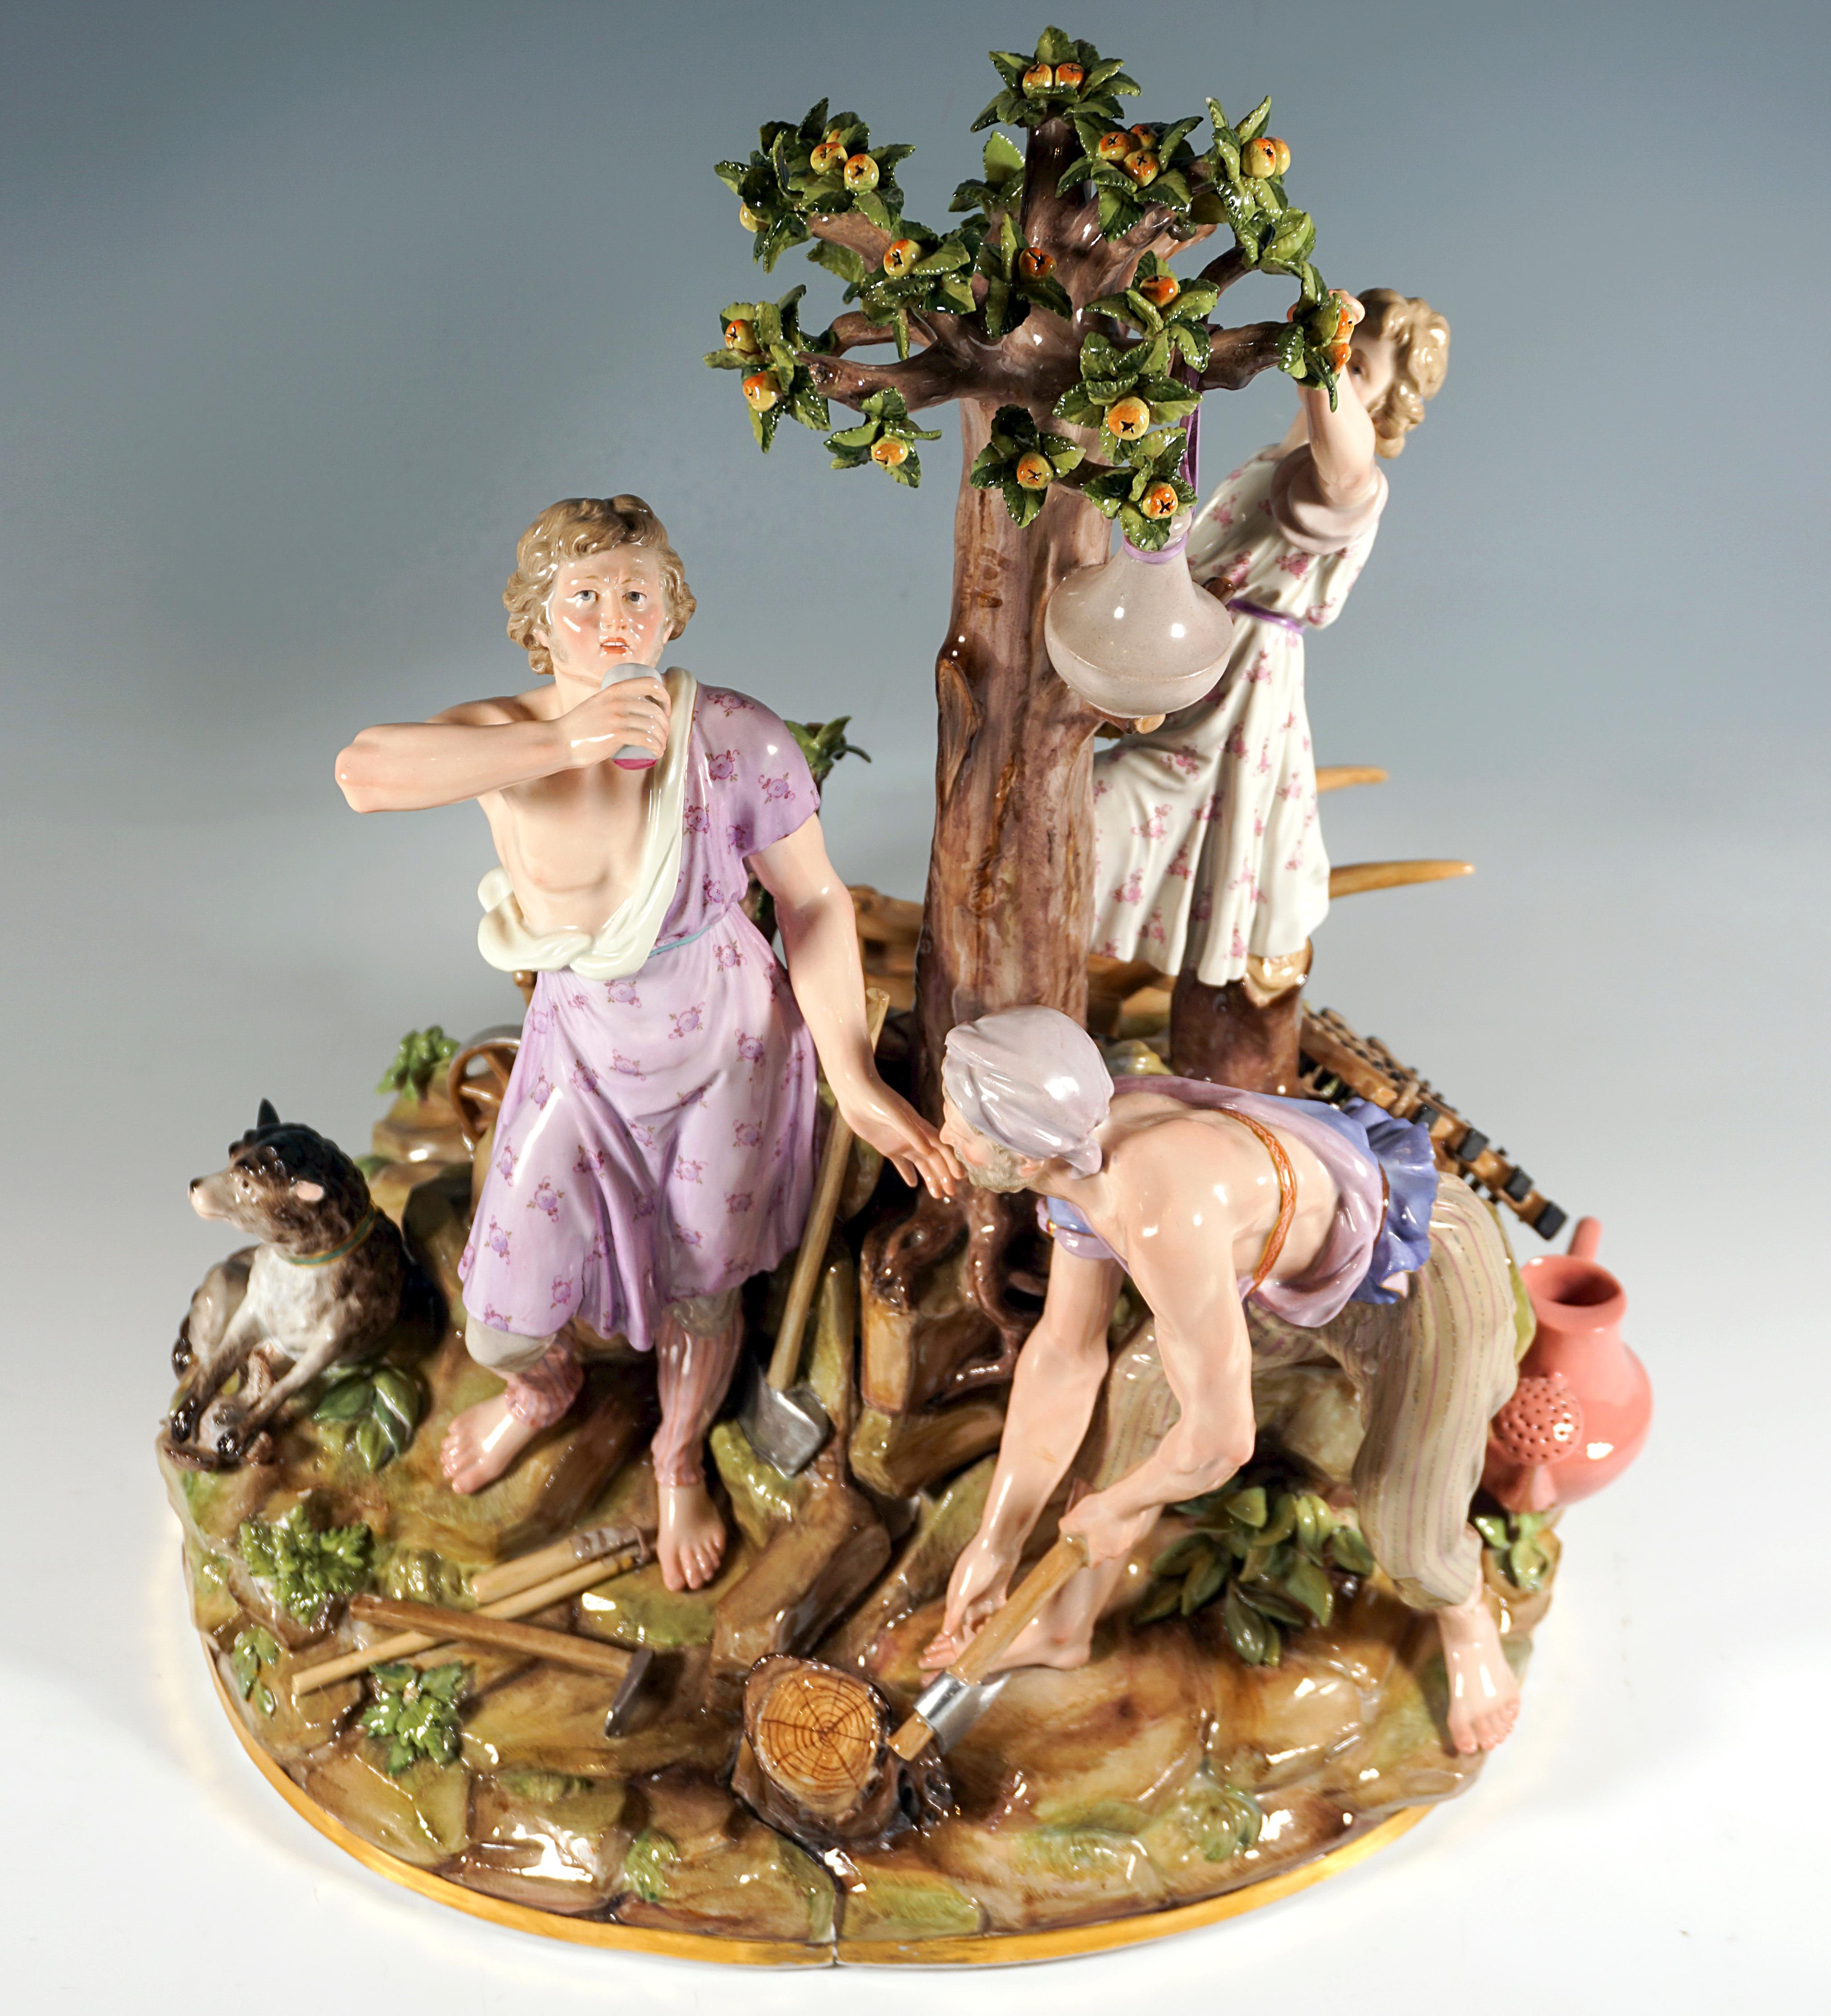 Ausgezeichnete Meissener Porzellangruppe des 19. Jahrhunderts.
Sehr große Darstellung der Allegorie des Ackerbaus, gruppiert um einen Apfelbaum:
im Vordergrund ein älterer Mann, der Holz hackt, daneben, unter dem Baum, ein junger Mann, der aus einem